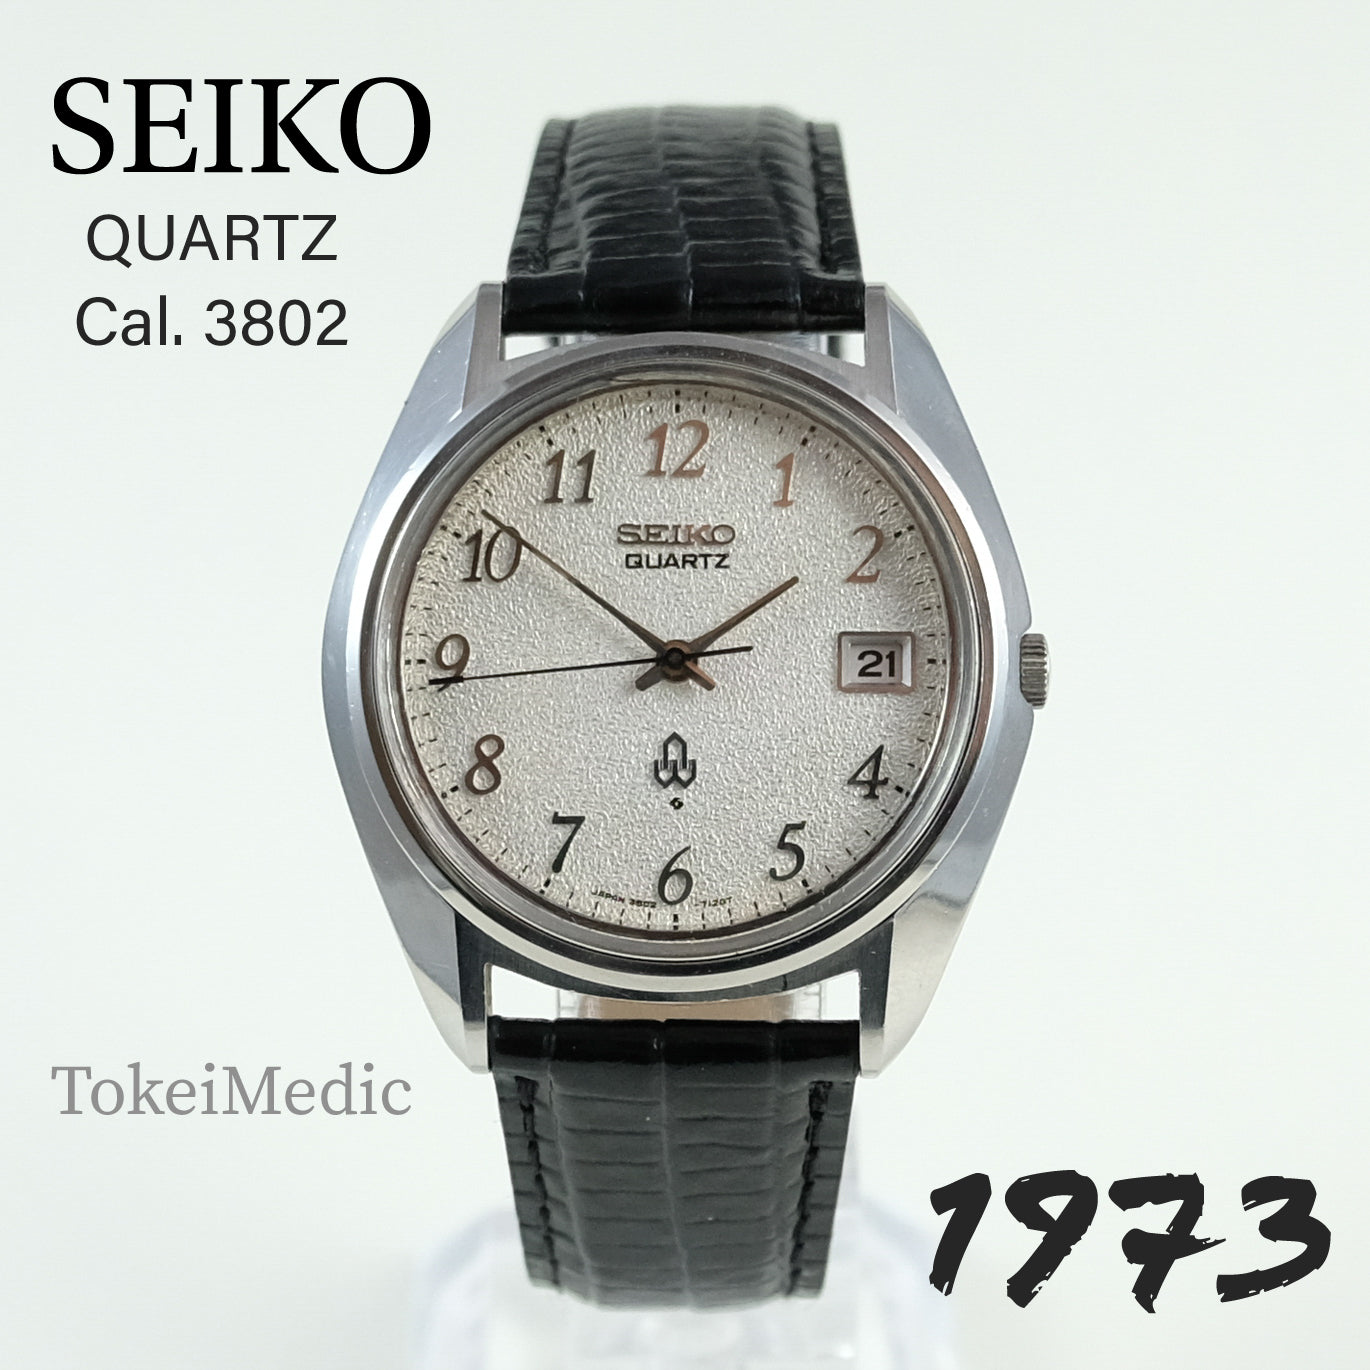 1973 Seiko Quartz 3802-7030 – TokeiMedic